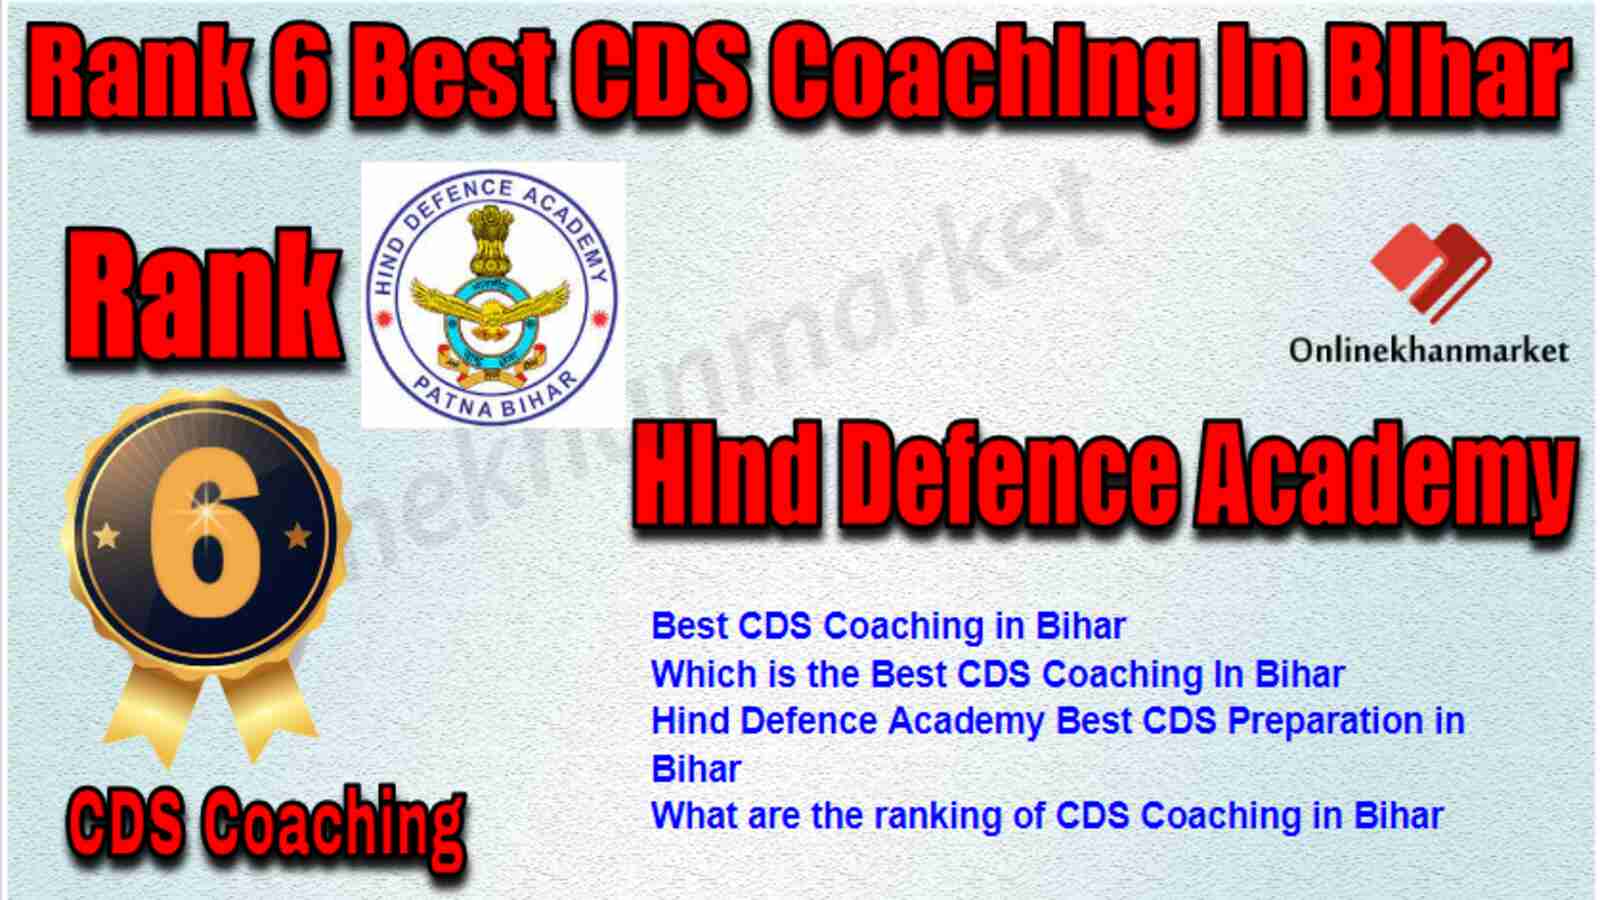 Rank 6 Best CDS Coaching in Bihar